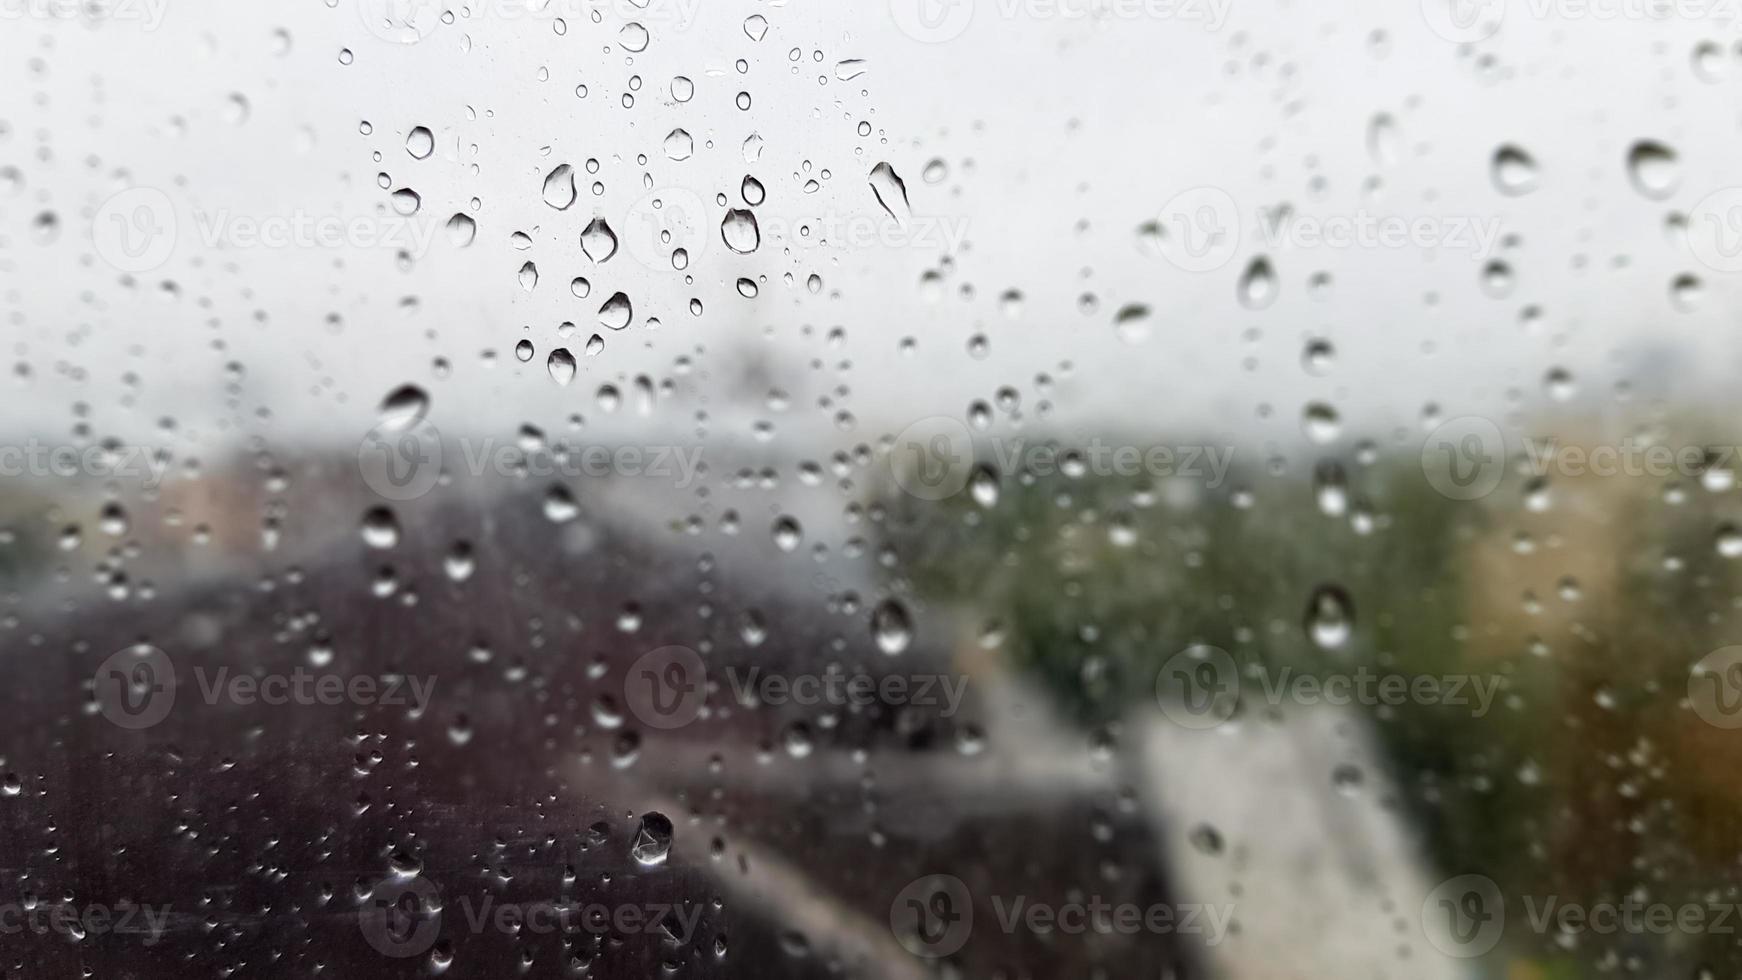 fenêtre humide avec des gouttes sur le fond de la ville d'automne par temps nuageux. vue de la fenêtre sous la pluie. goutte d'eau sur la vitre pendant la pluie avec un arrière-plan flou de la scène de la ville photo